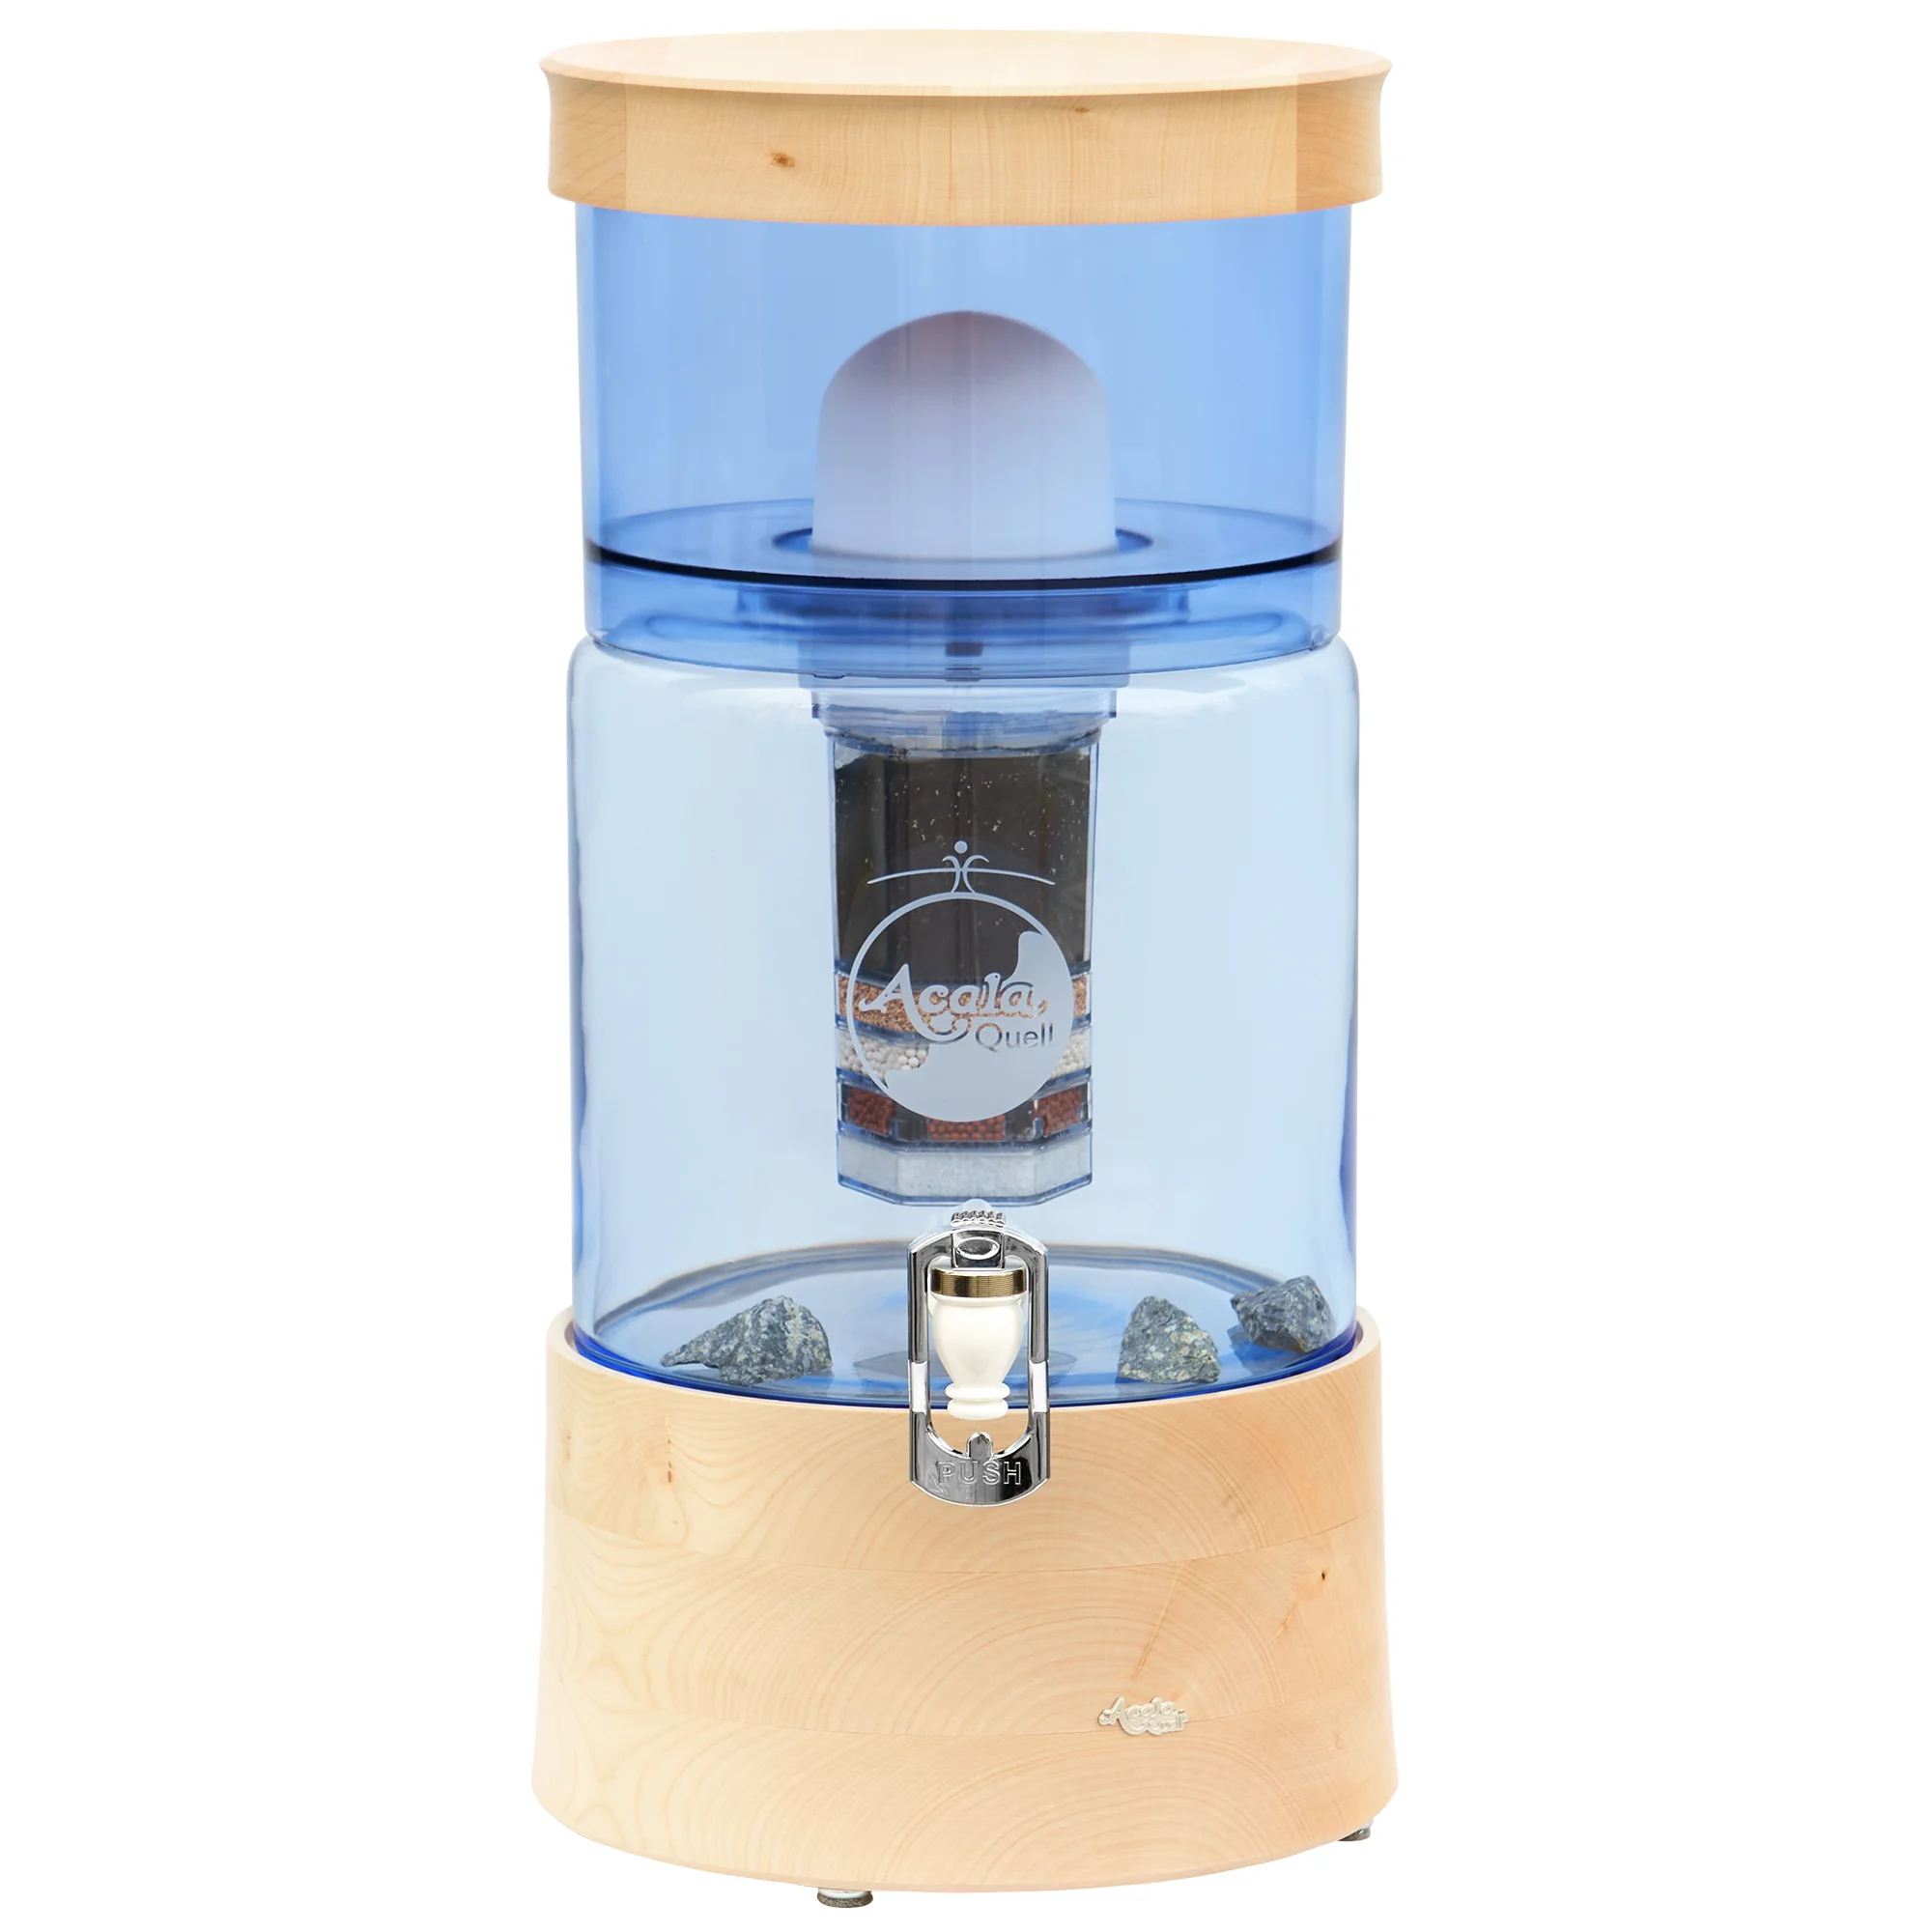 Zu sehen ist der Acala Stand Wasserfilter Smart in blau mit einer Filterkartusche, einem Keramikfilter und Hahn in weiß. Deckel und Sockel sind aus Ahorn Echtholz. Auf dem Sockel befindet sich ein kleines silbernes Acala Logo.